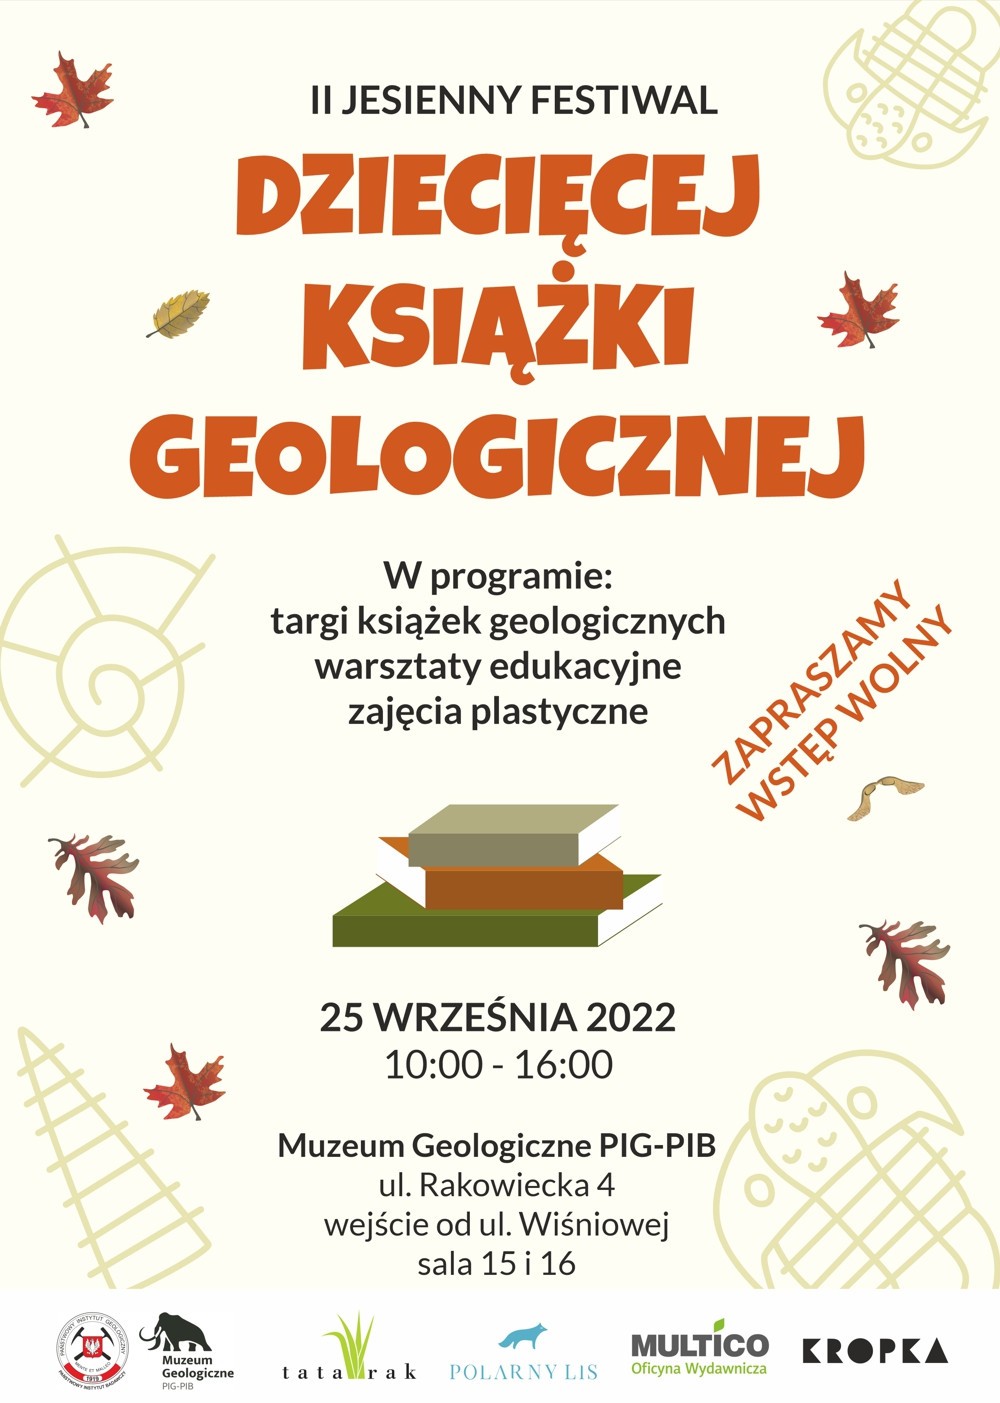 Plakat promujący wydarzenie II Jesienny Festiwal Dziecięcej Książki Geologicznej